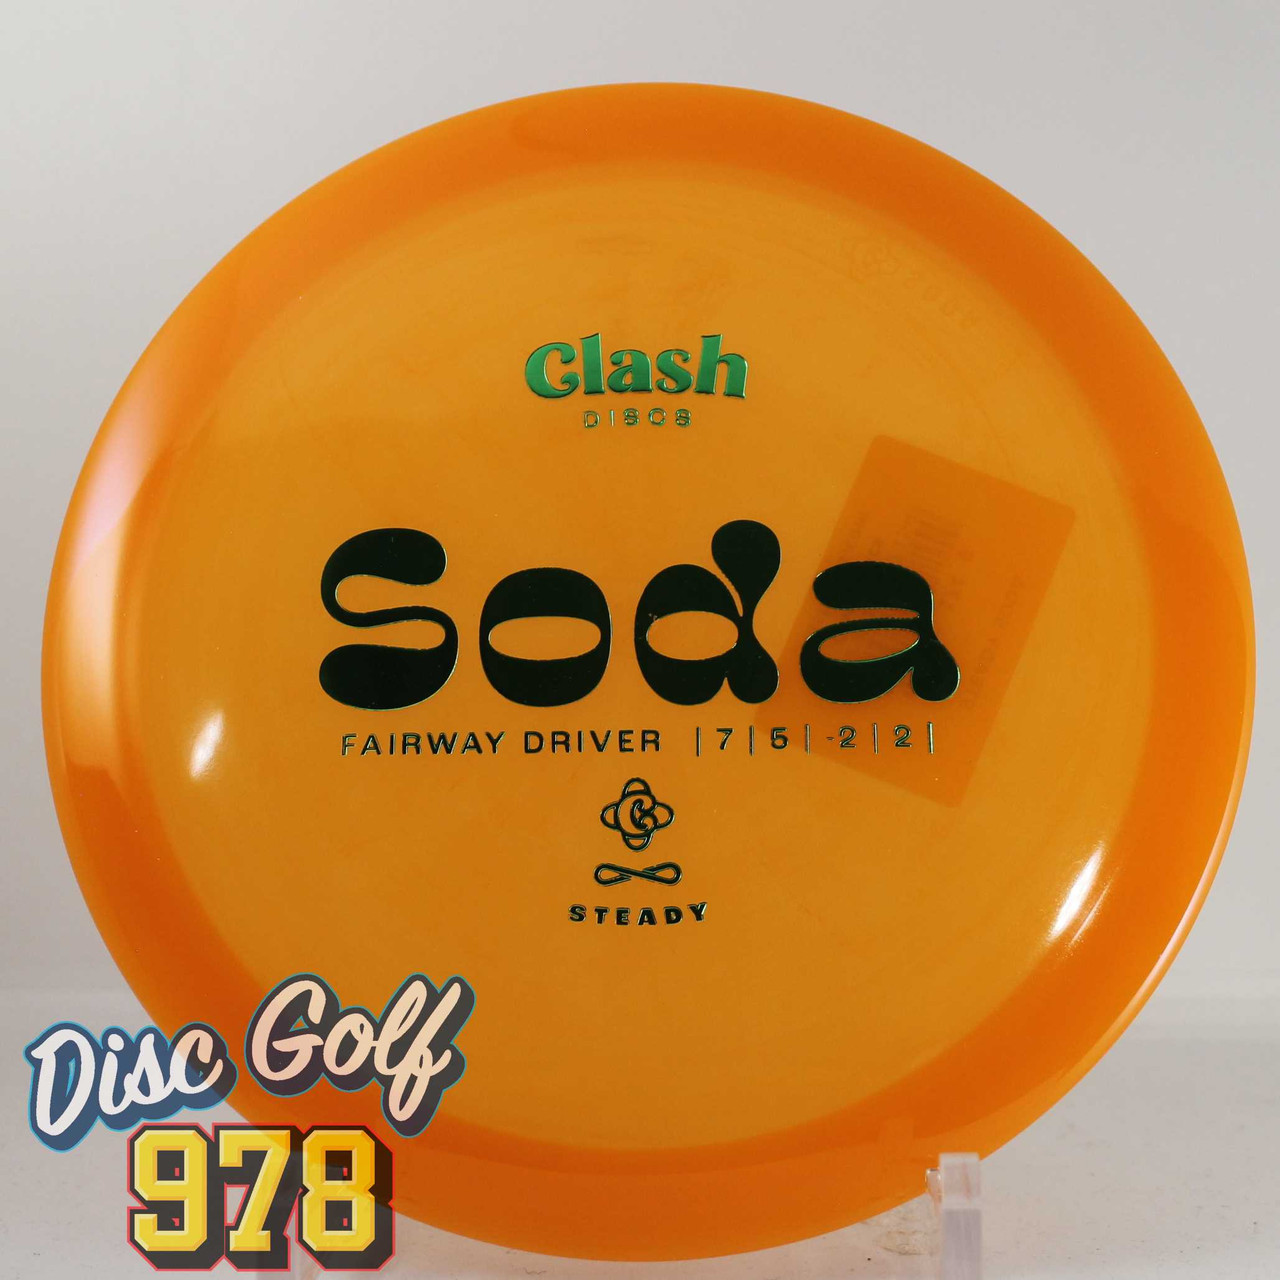 Clash Discs Soda Steady Orange-Green A 174.3g